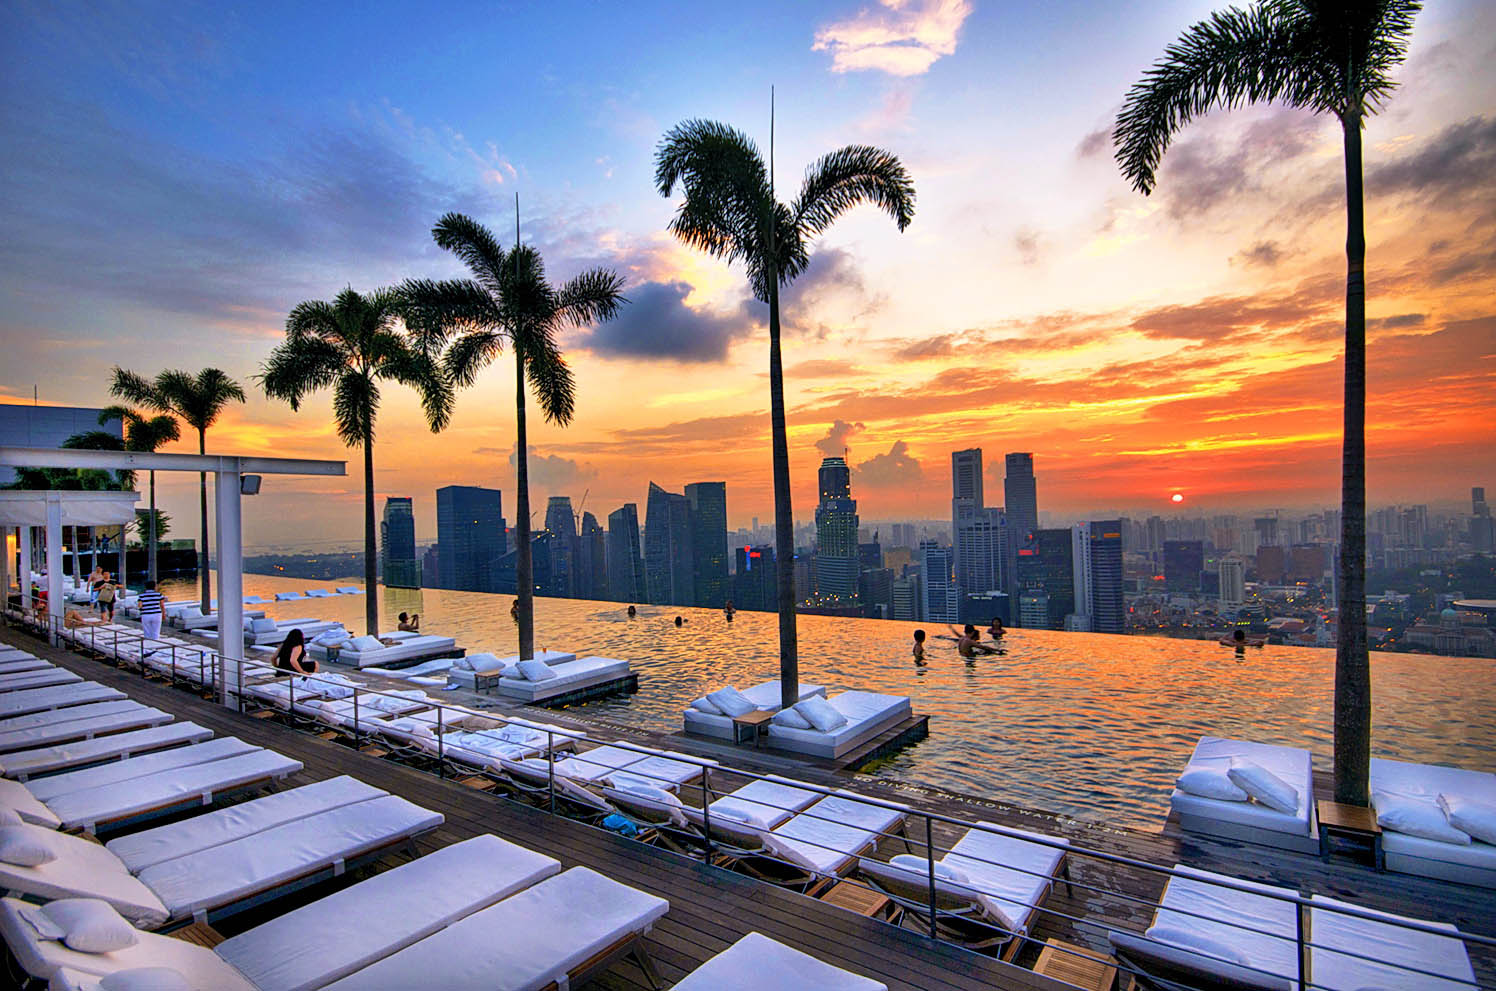 Marina Bay Sands Five Star Hotel In Singapore Ruf Lyf